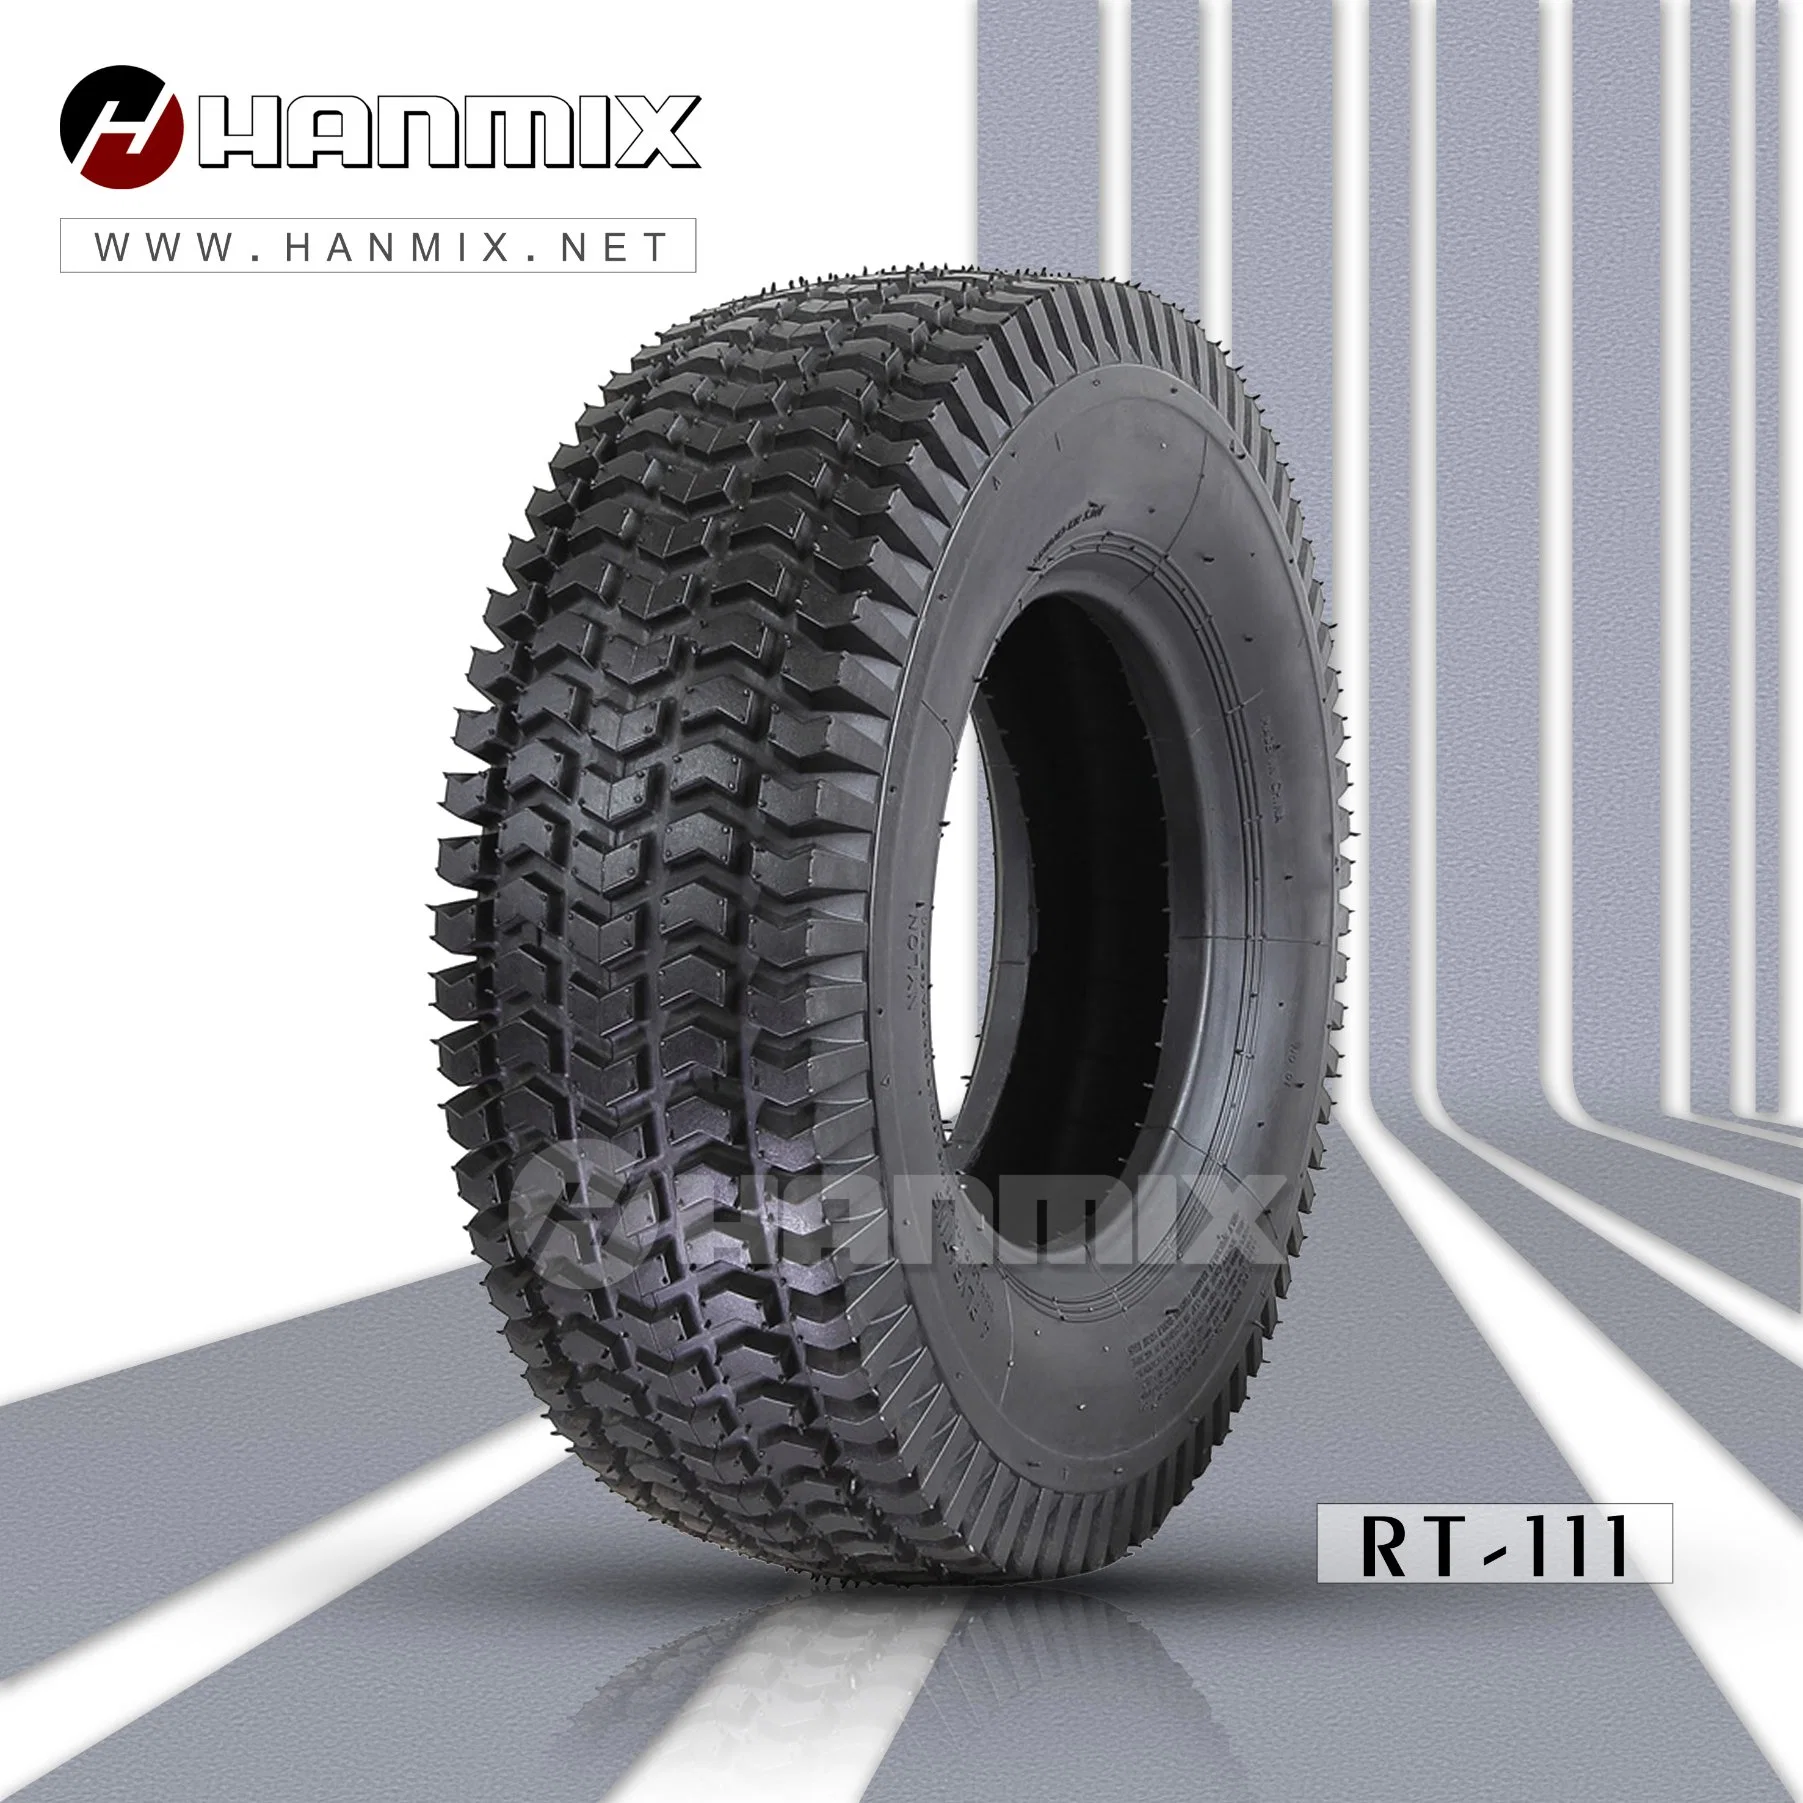 Corta-relva industrial para pneus Hanmix pneus para relvado IND, trator de relva, camião de mão, pneu de polarização do timão 26 * 7.5-12